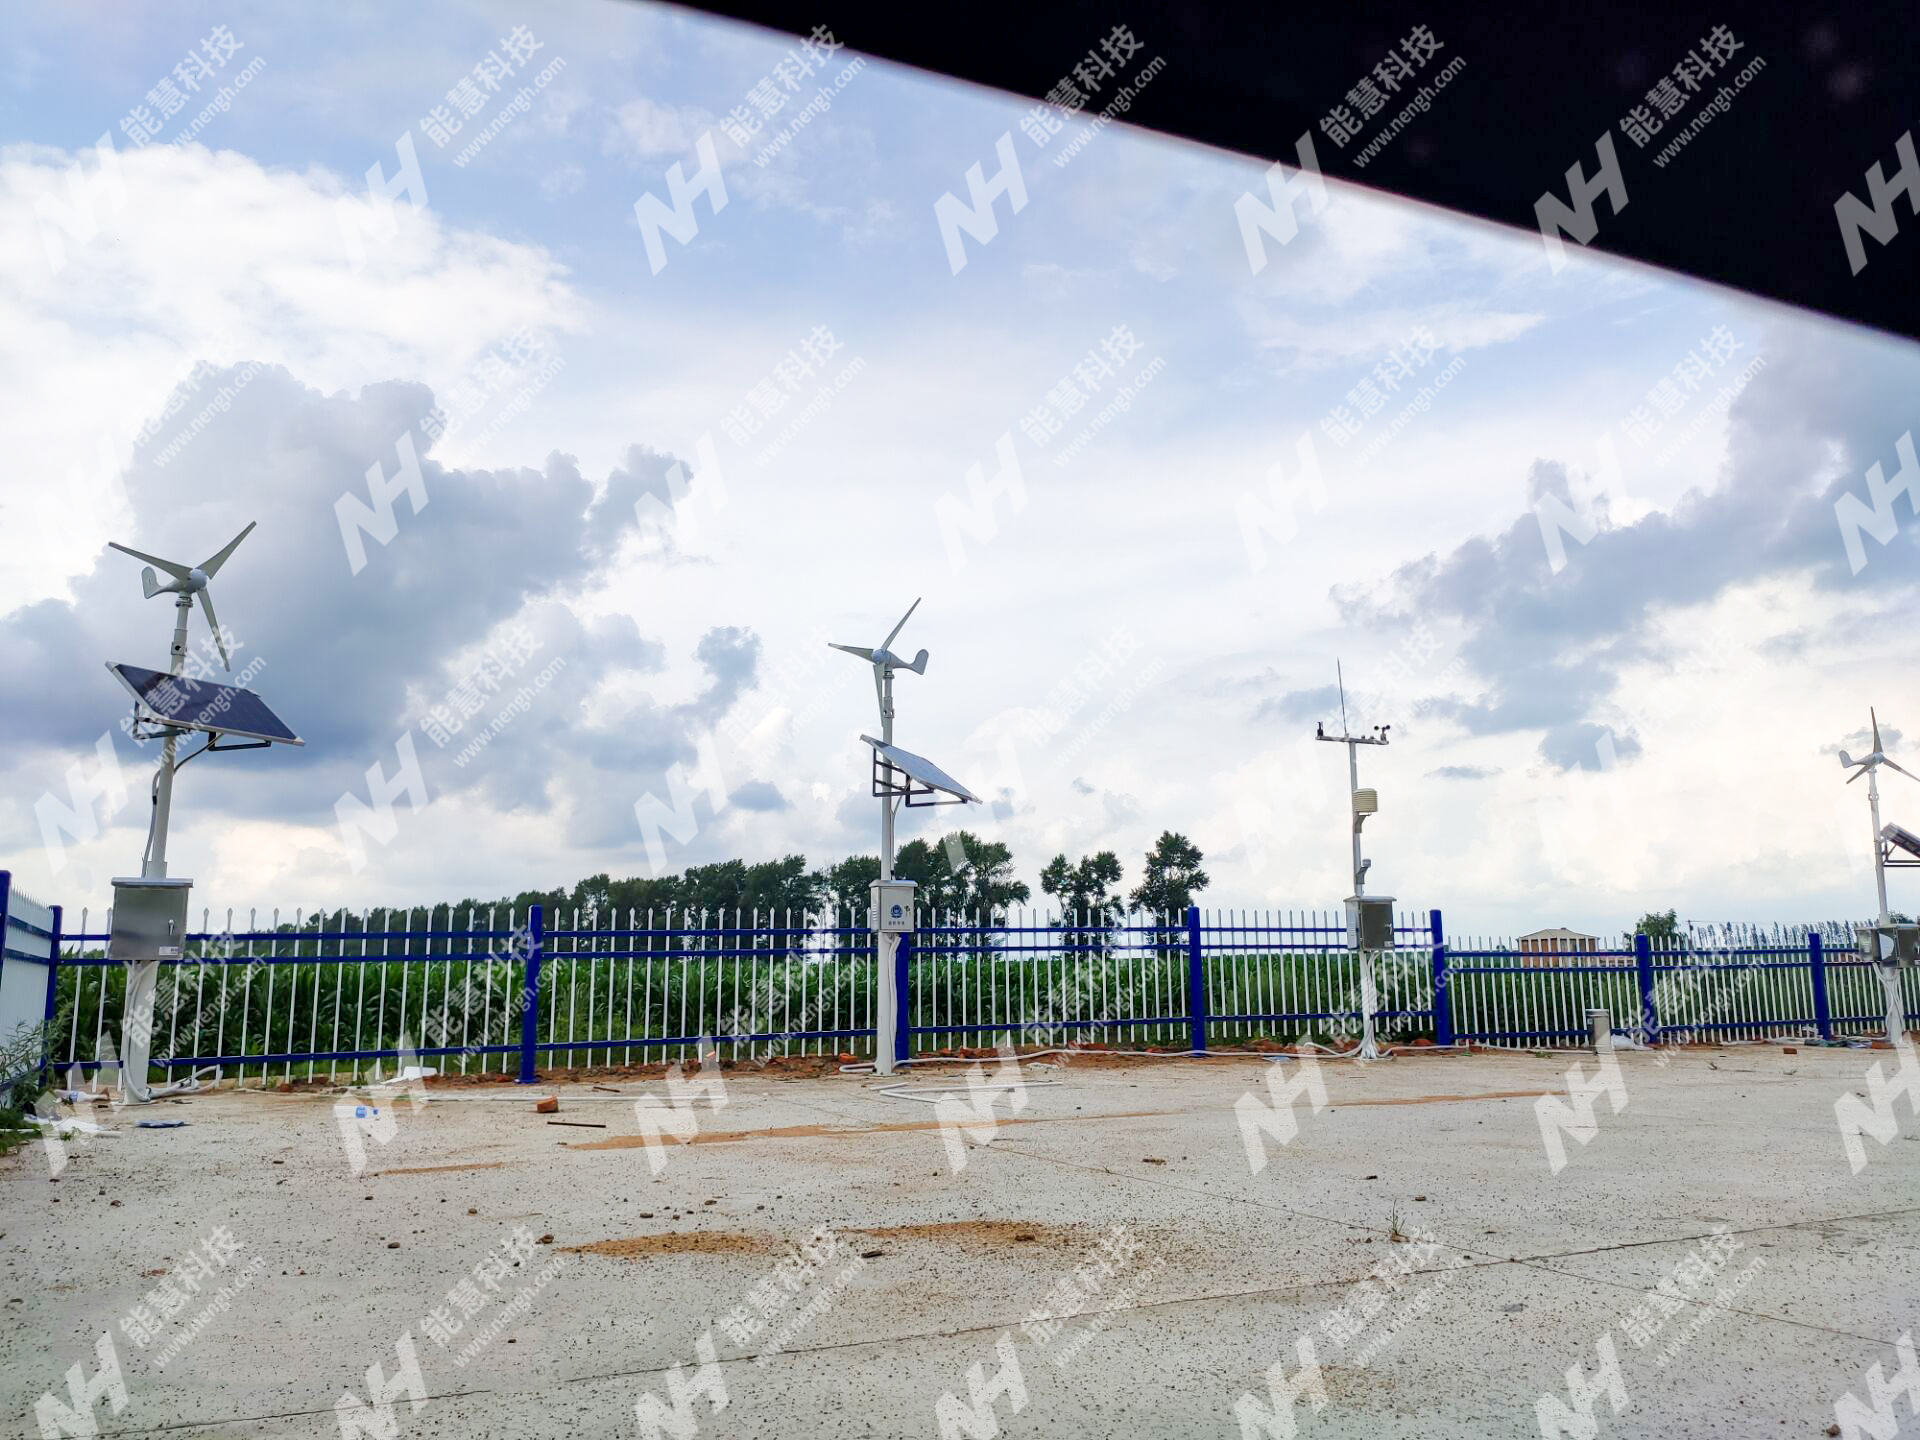 黑龙江某建筑工程公司-气象观测站